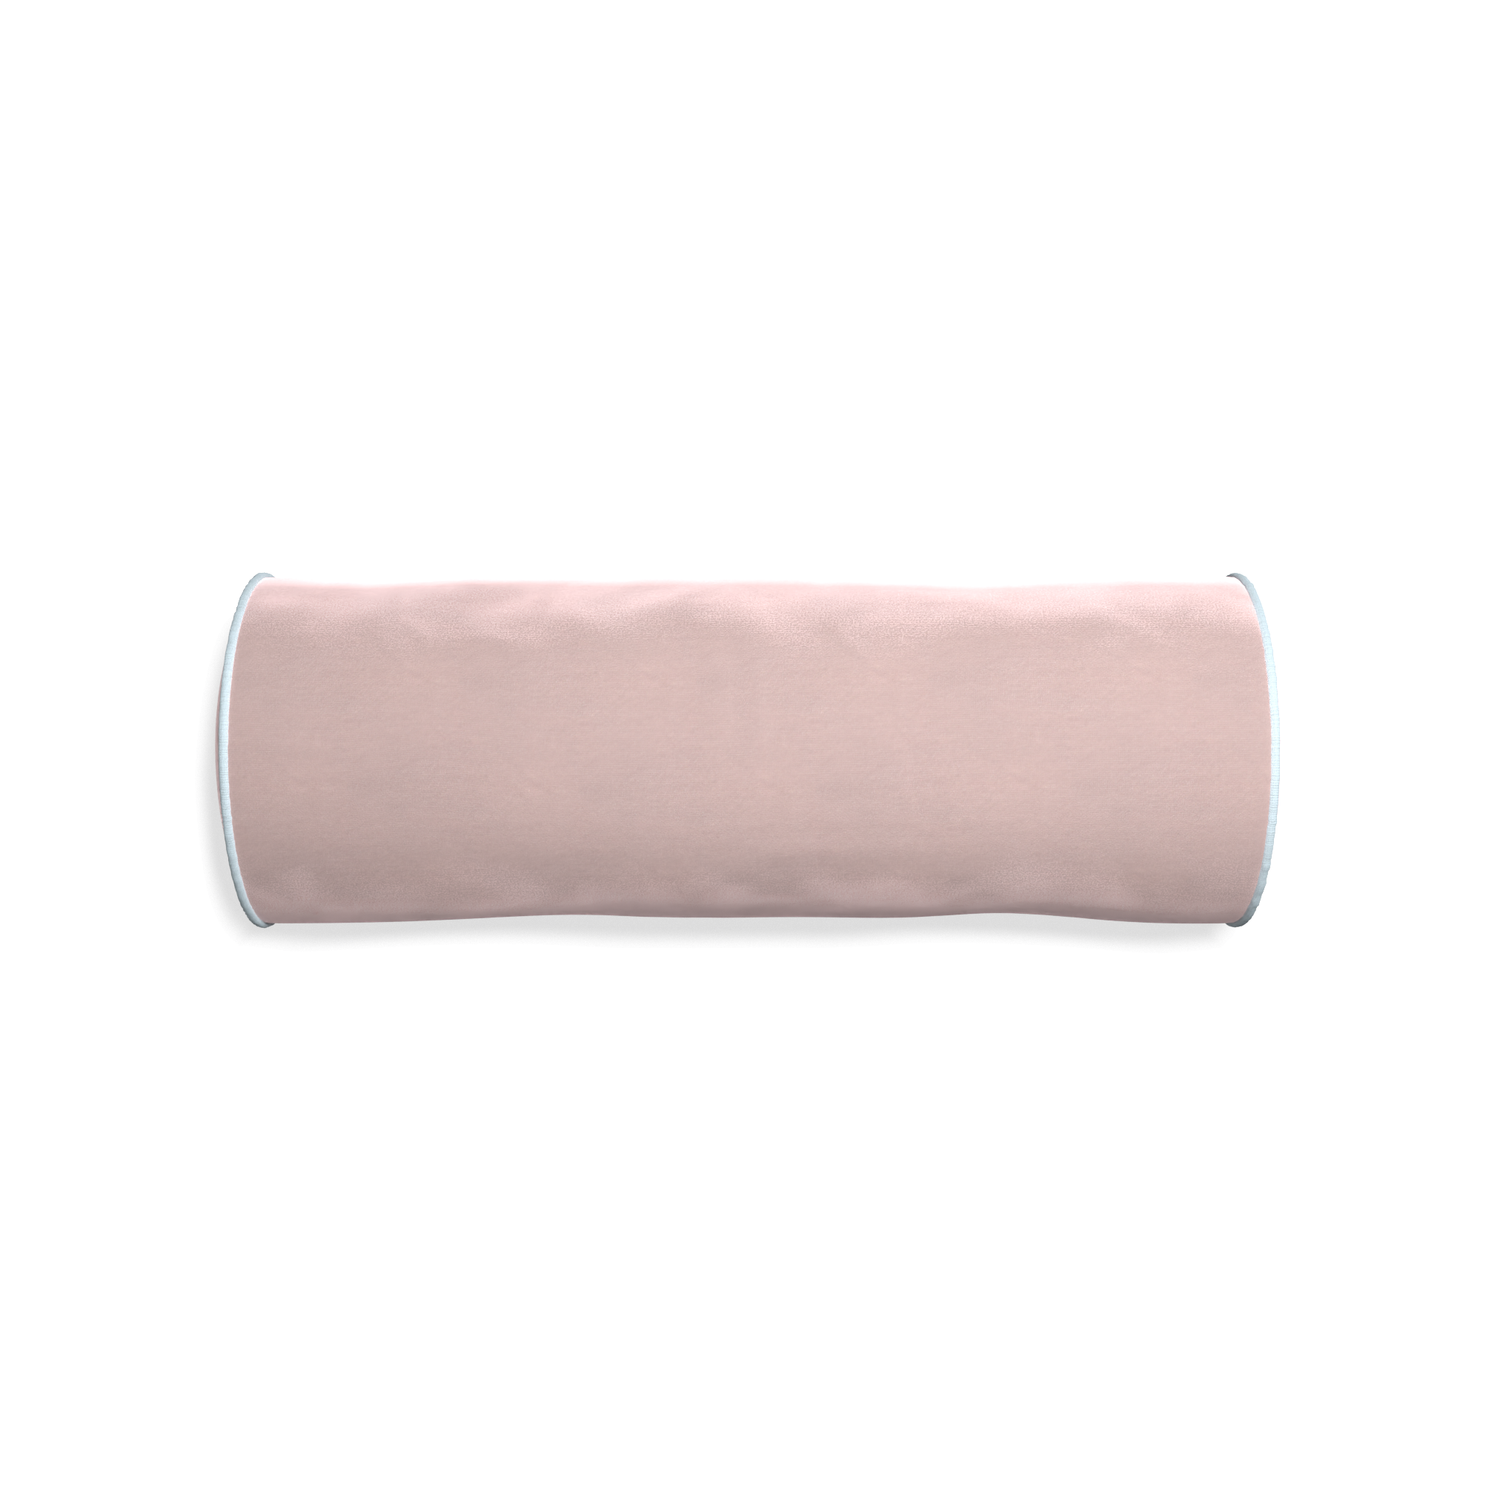 bolster light pink velvet pillow with light blue piping